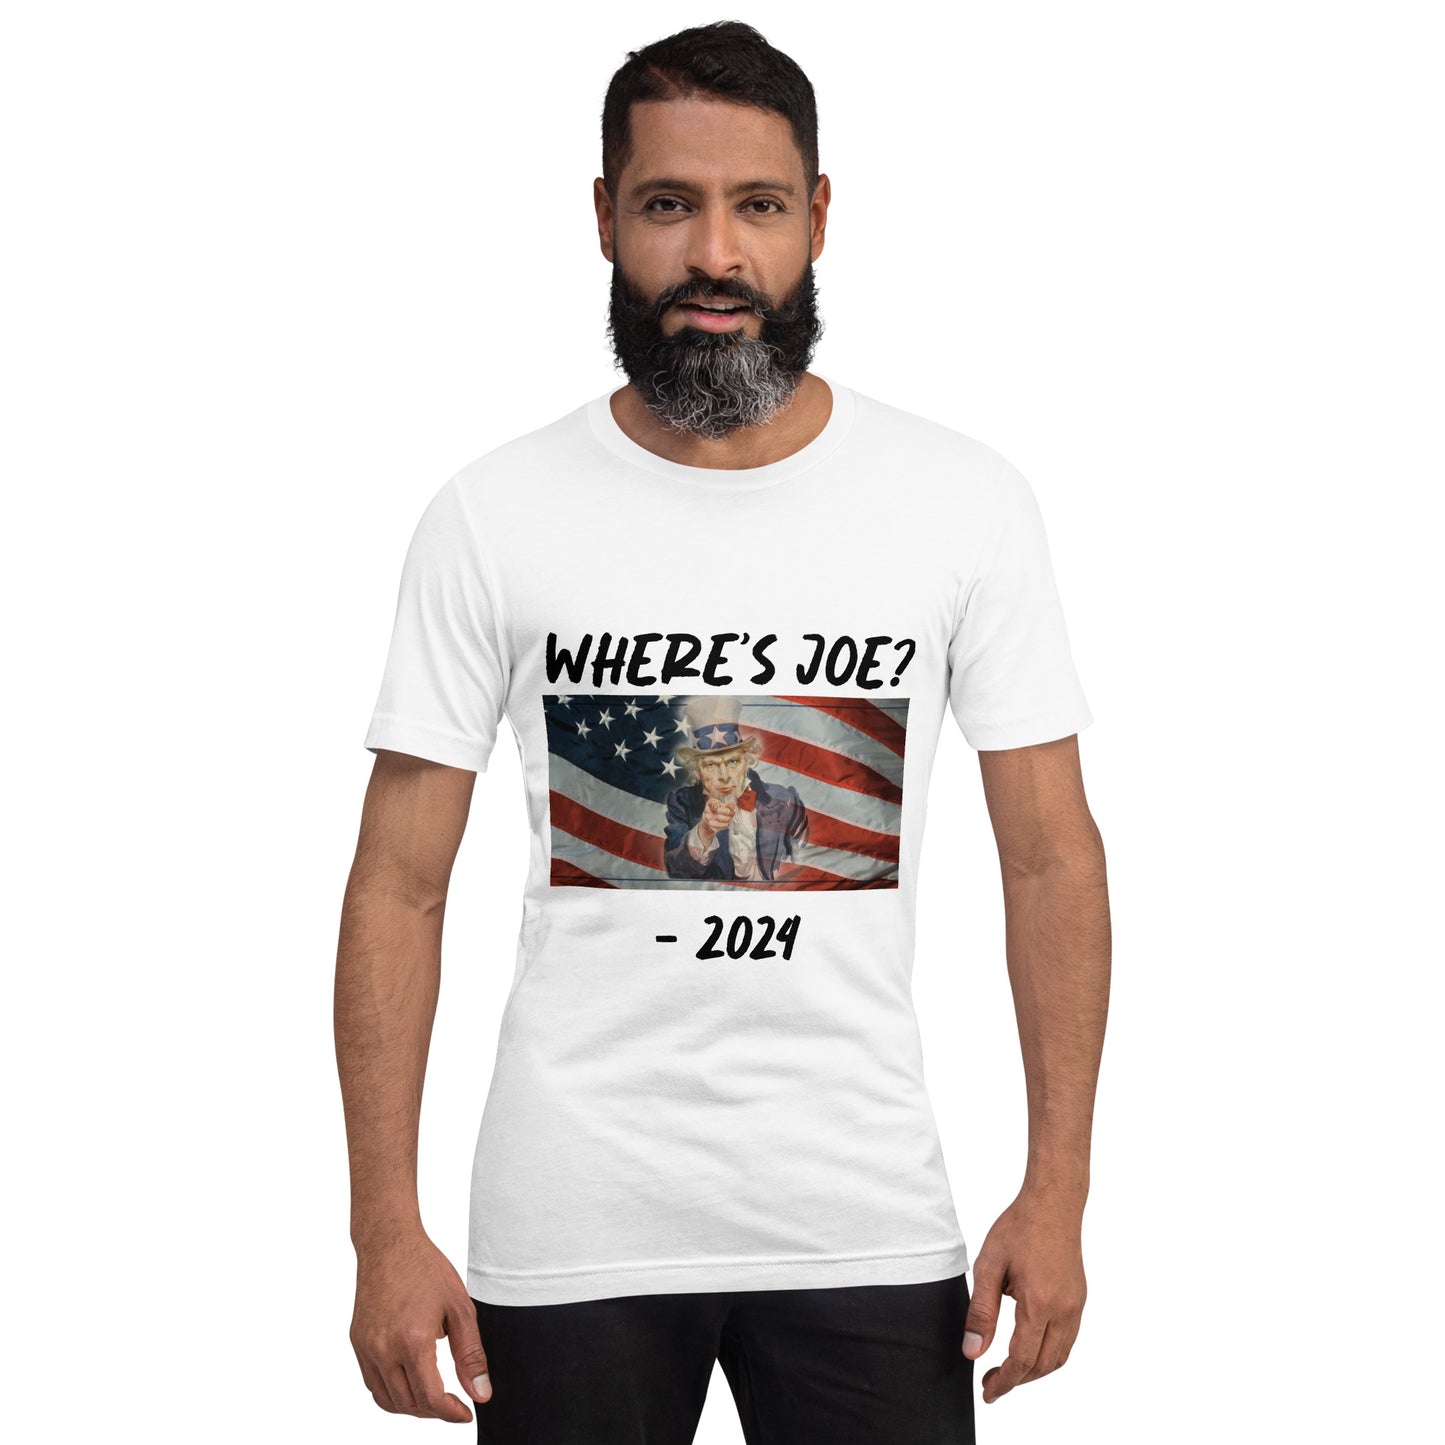 Mens "Where's Joe?" T-Shirt